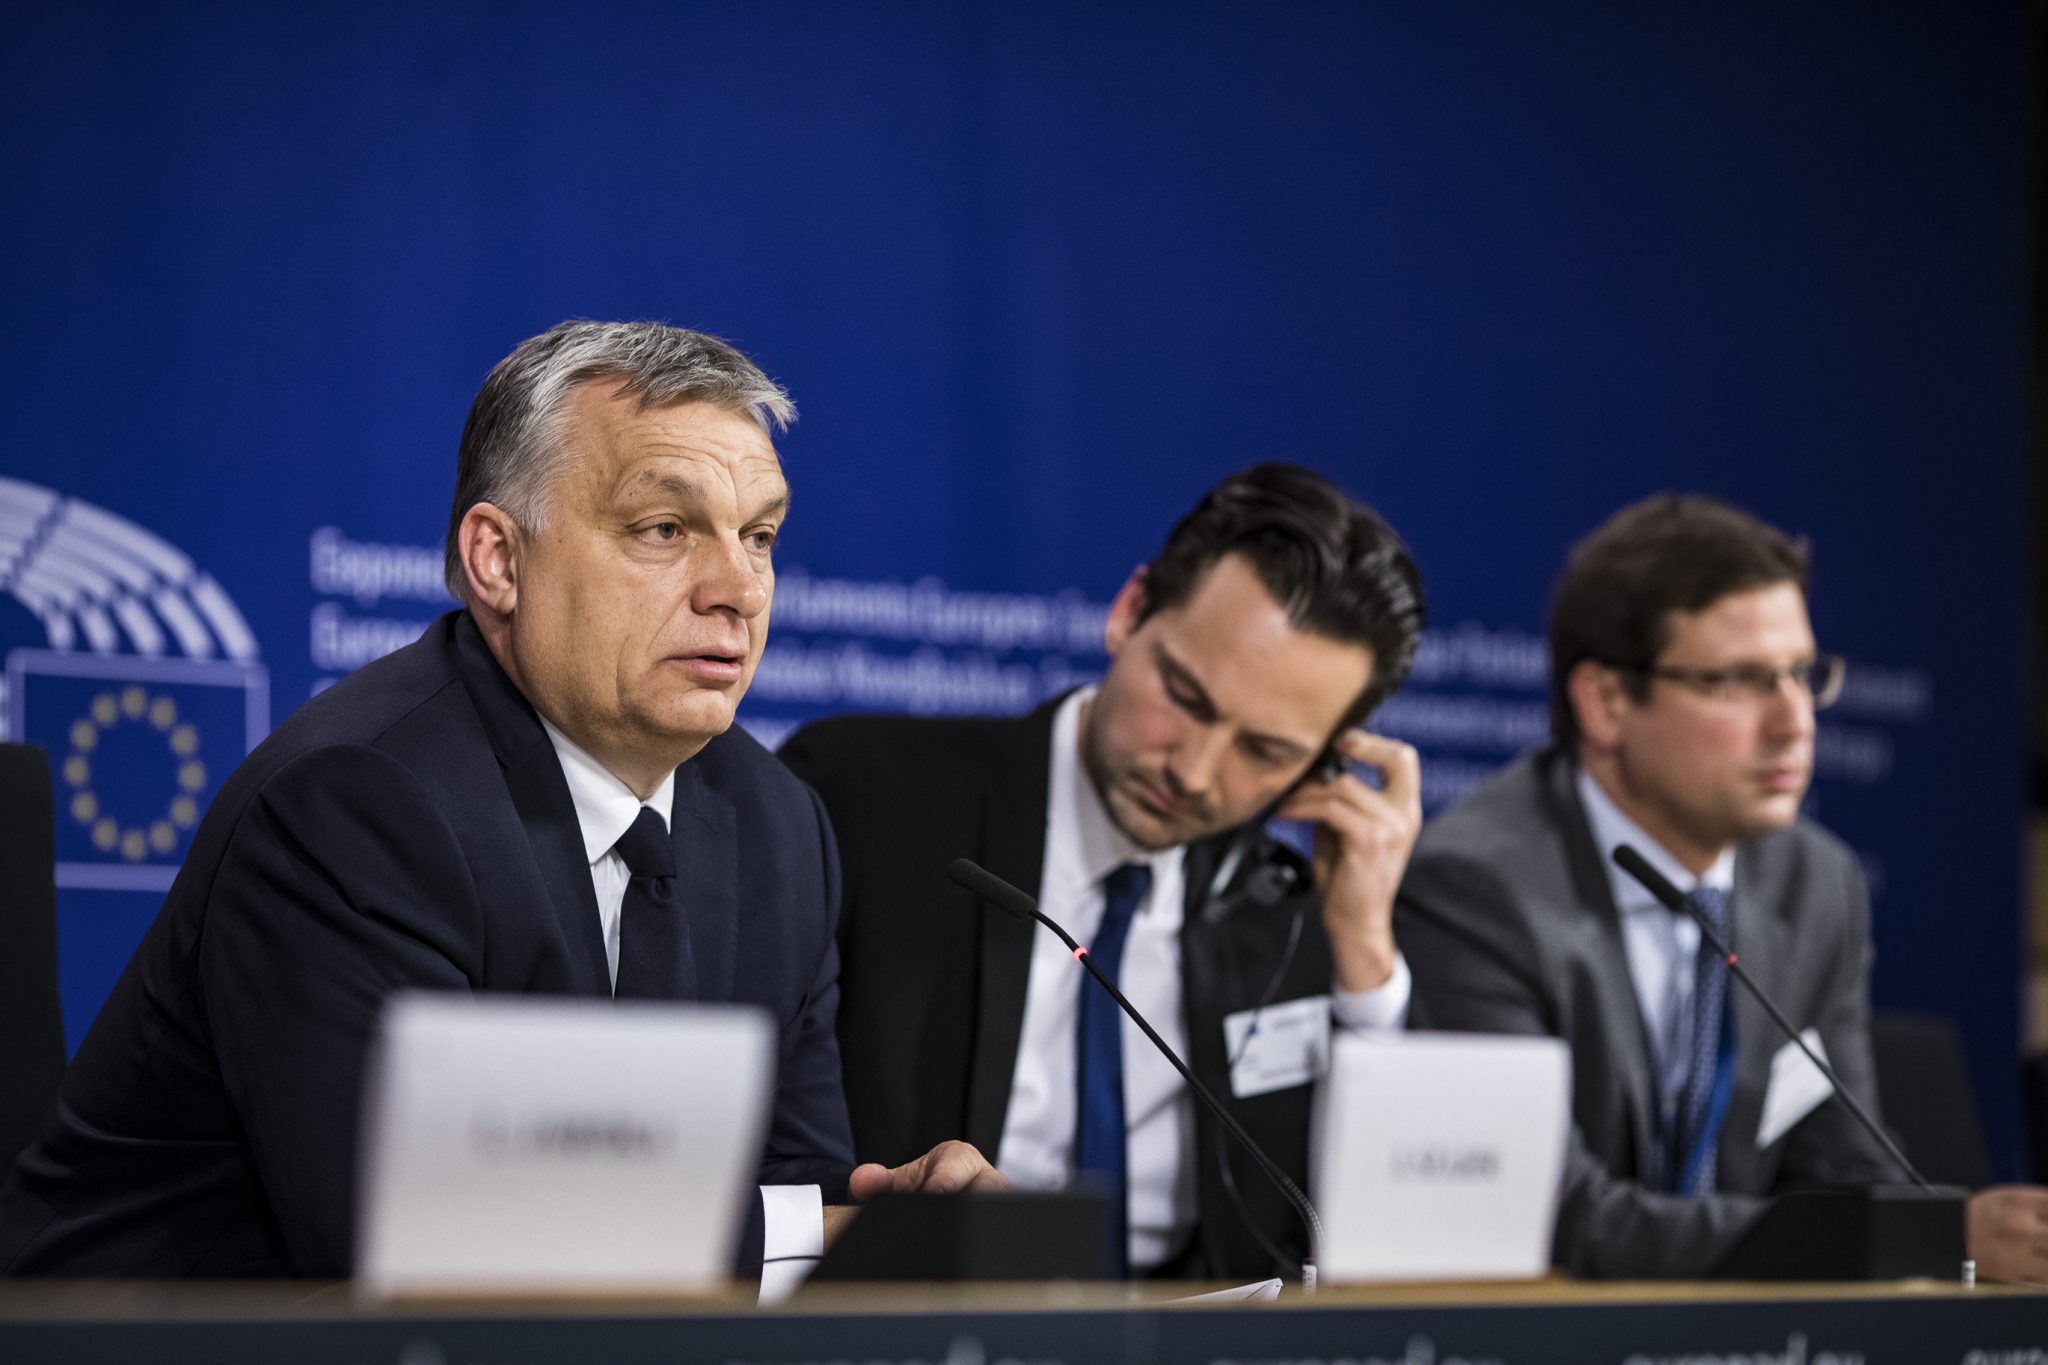 Fidesz suspendiert EVP-Mitgliedschaft - Weisenrat wird über Rücknahme entscheiden